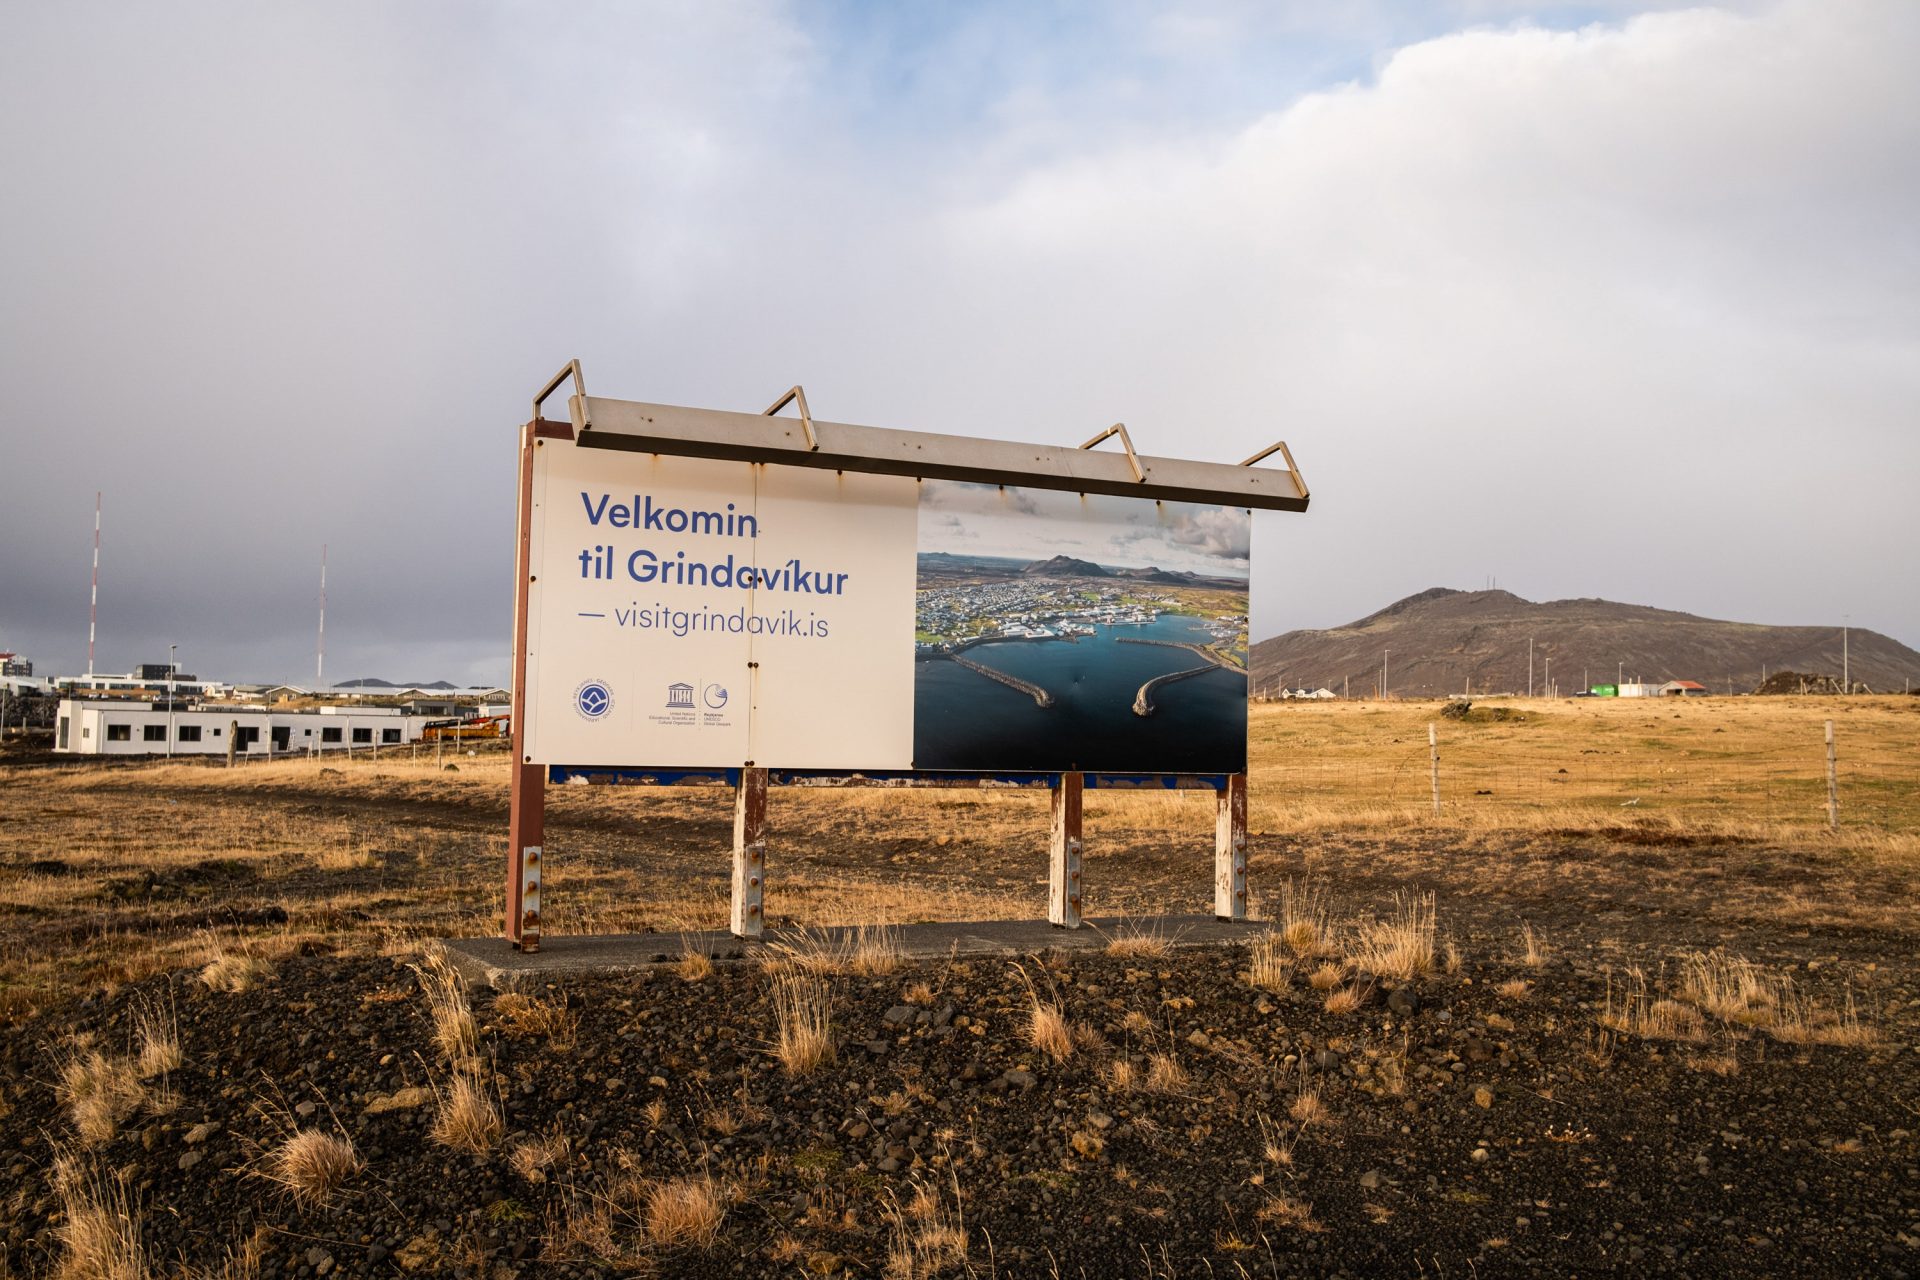 Wir verlassen Grindavik